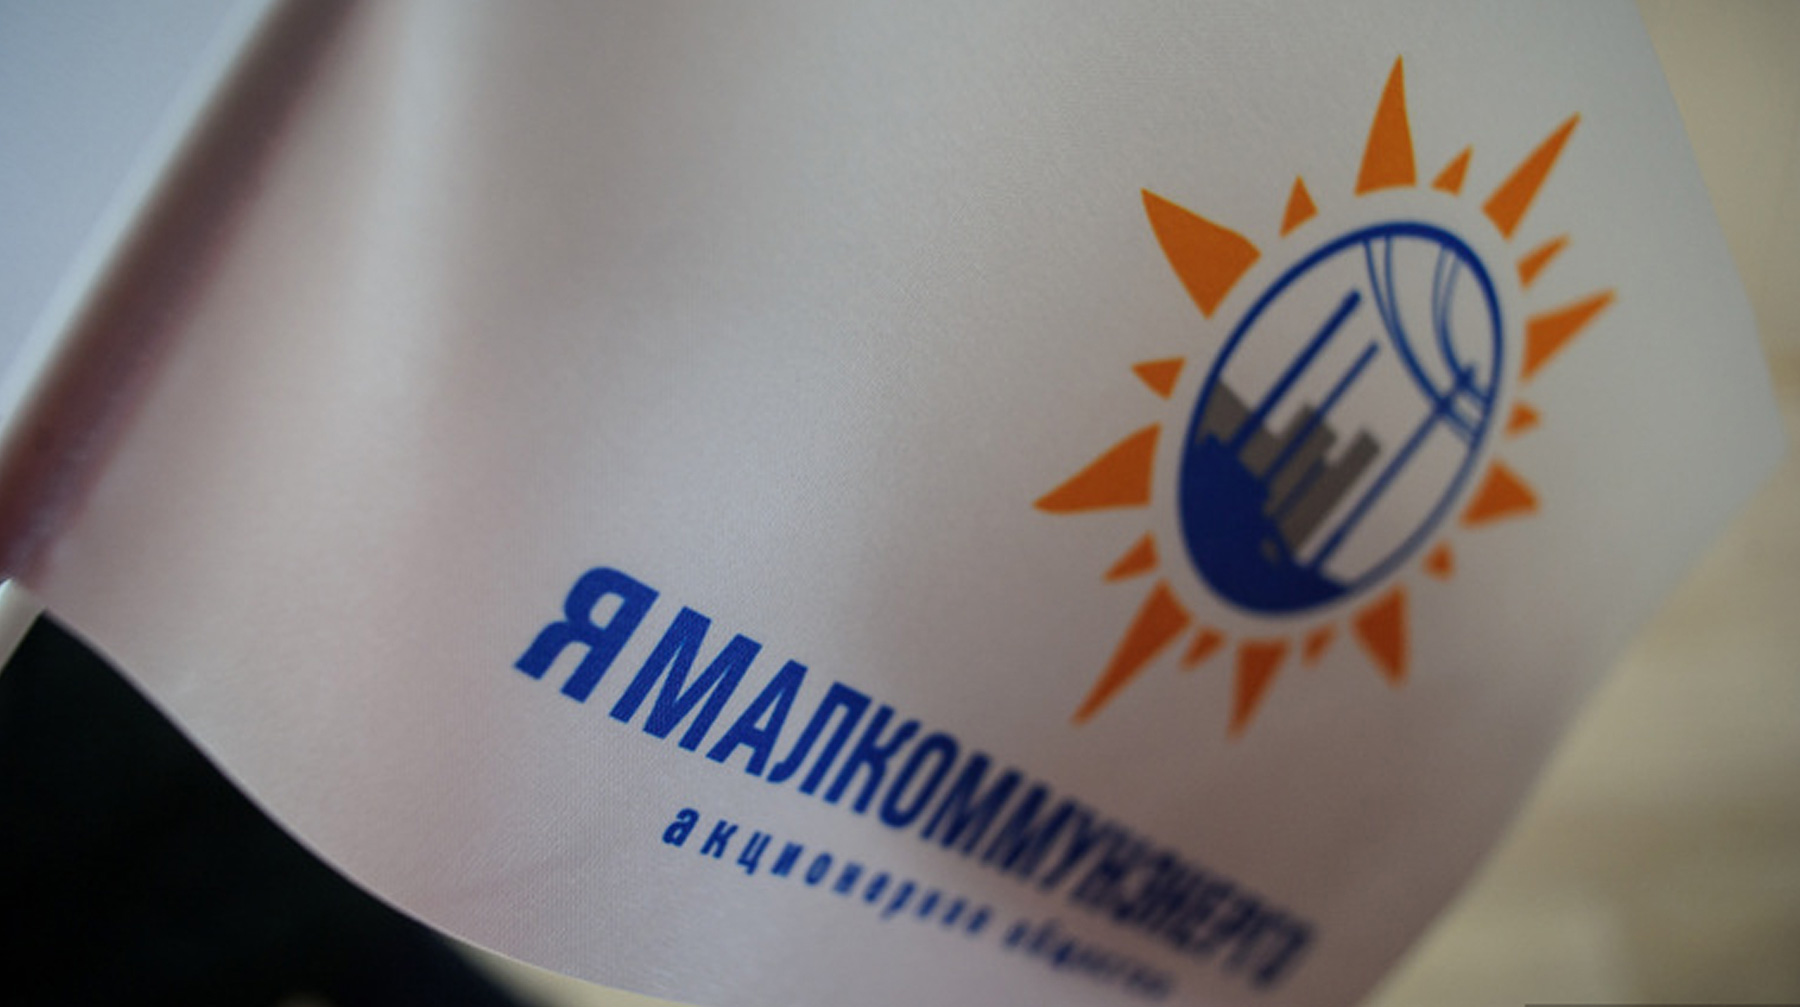 По информации издания, «Ямалкоммунэнерго» незаконно заключало контракты с АО «Ямалгосснаб» на покупку ГСМ undefined